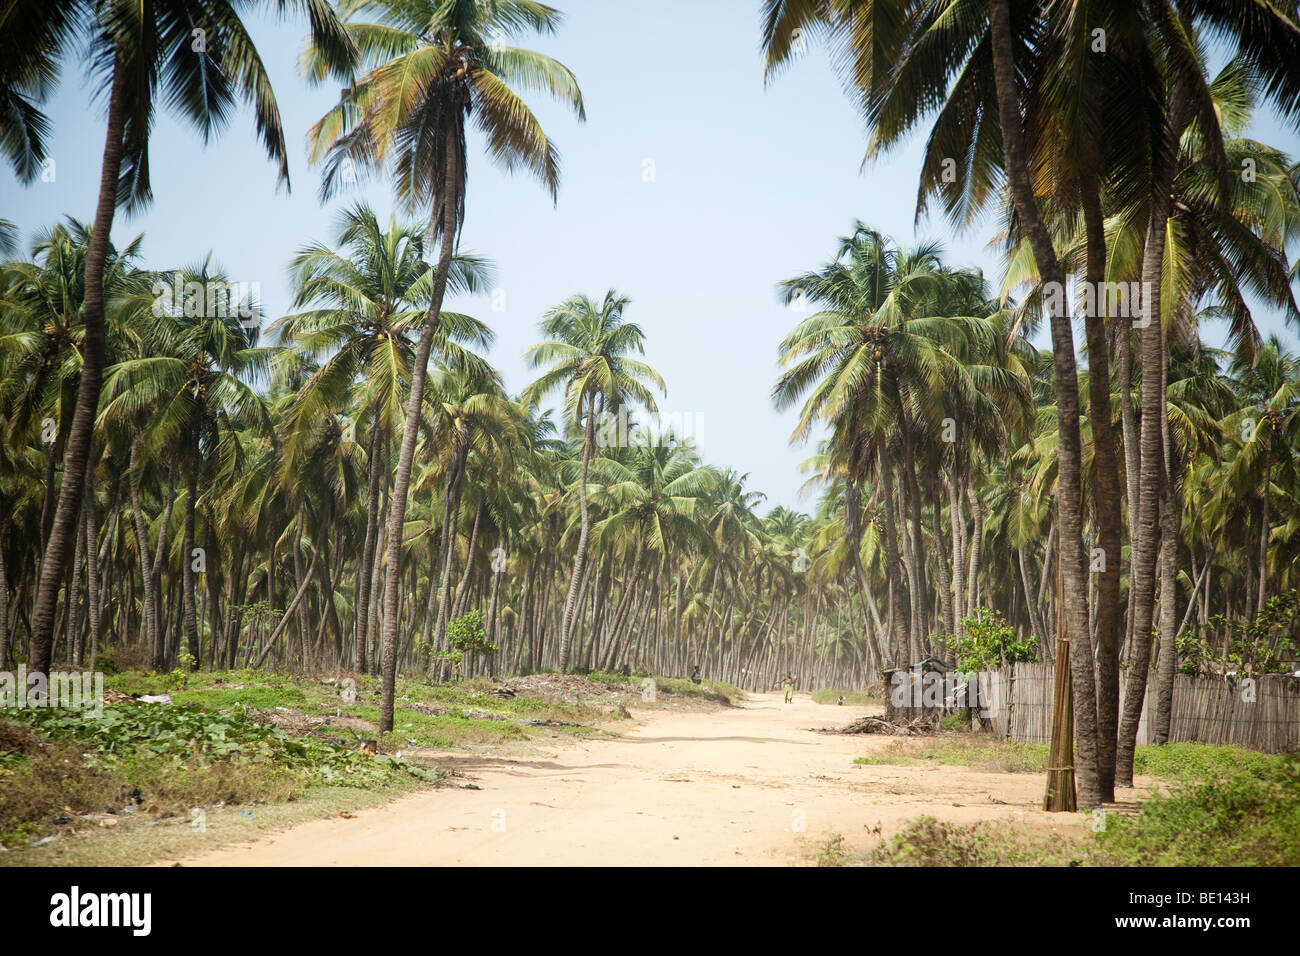 Palmen säumen die Strände von Benin. Diese unbefestigte Straße verbindet die Hauptstadt, Cotonou, mit der historischen Stadt von Ouidah. Stockfoto